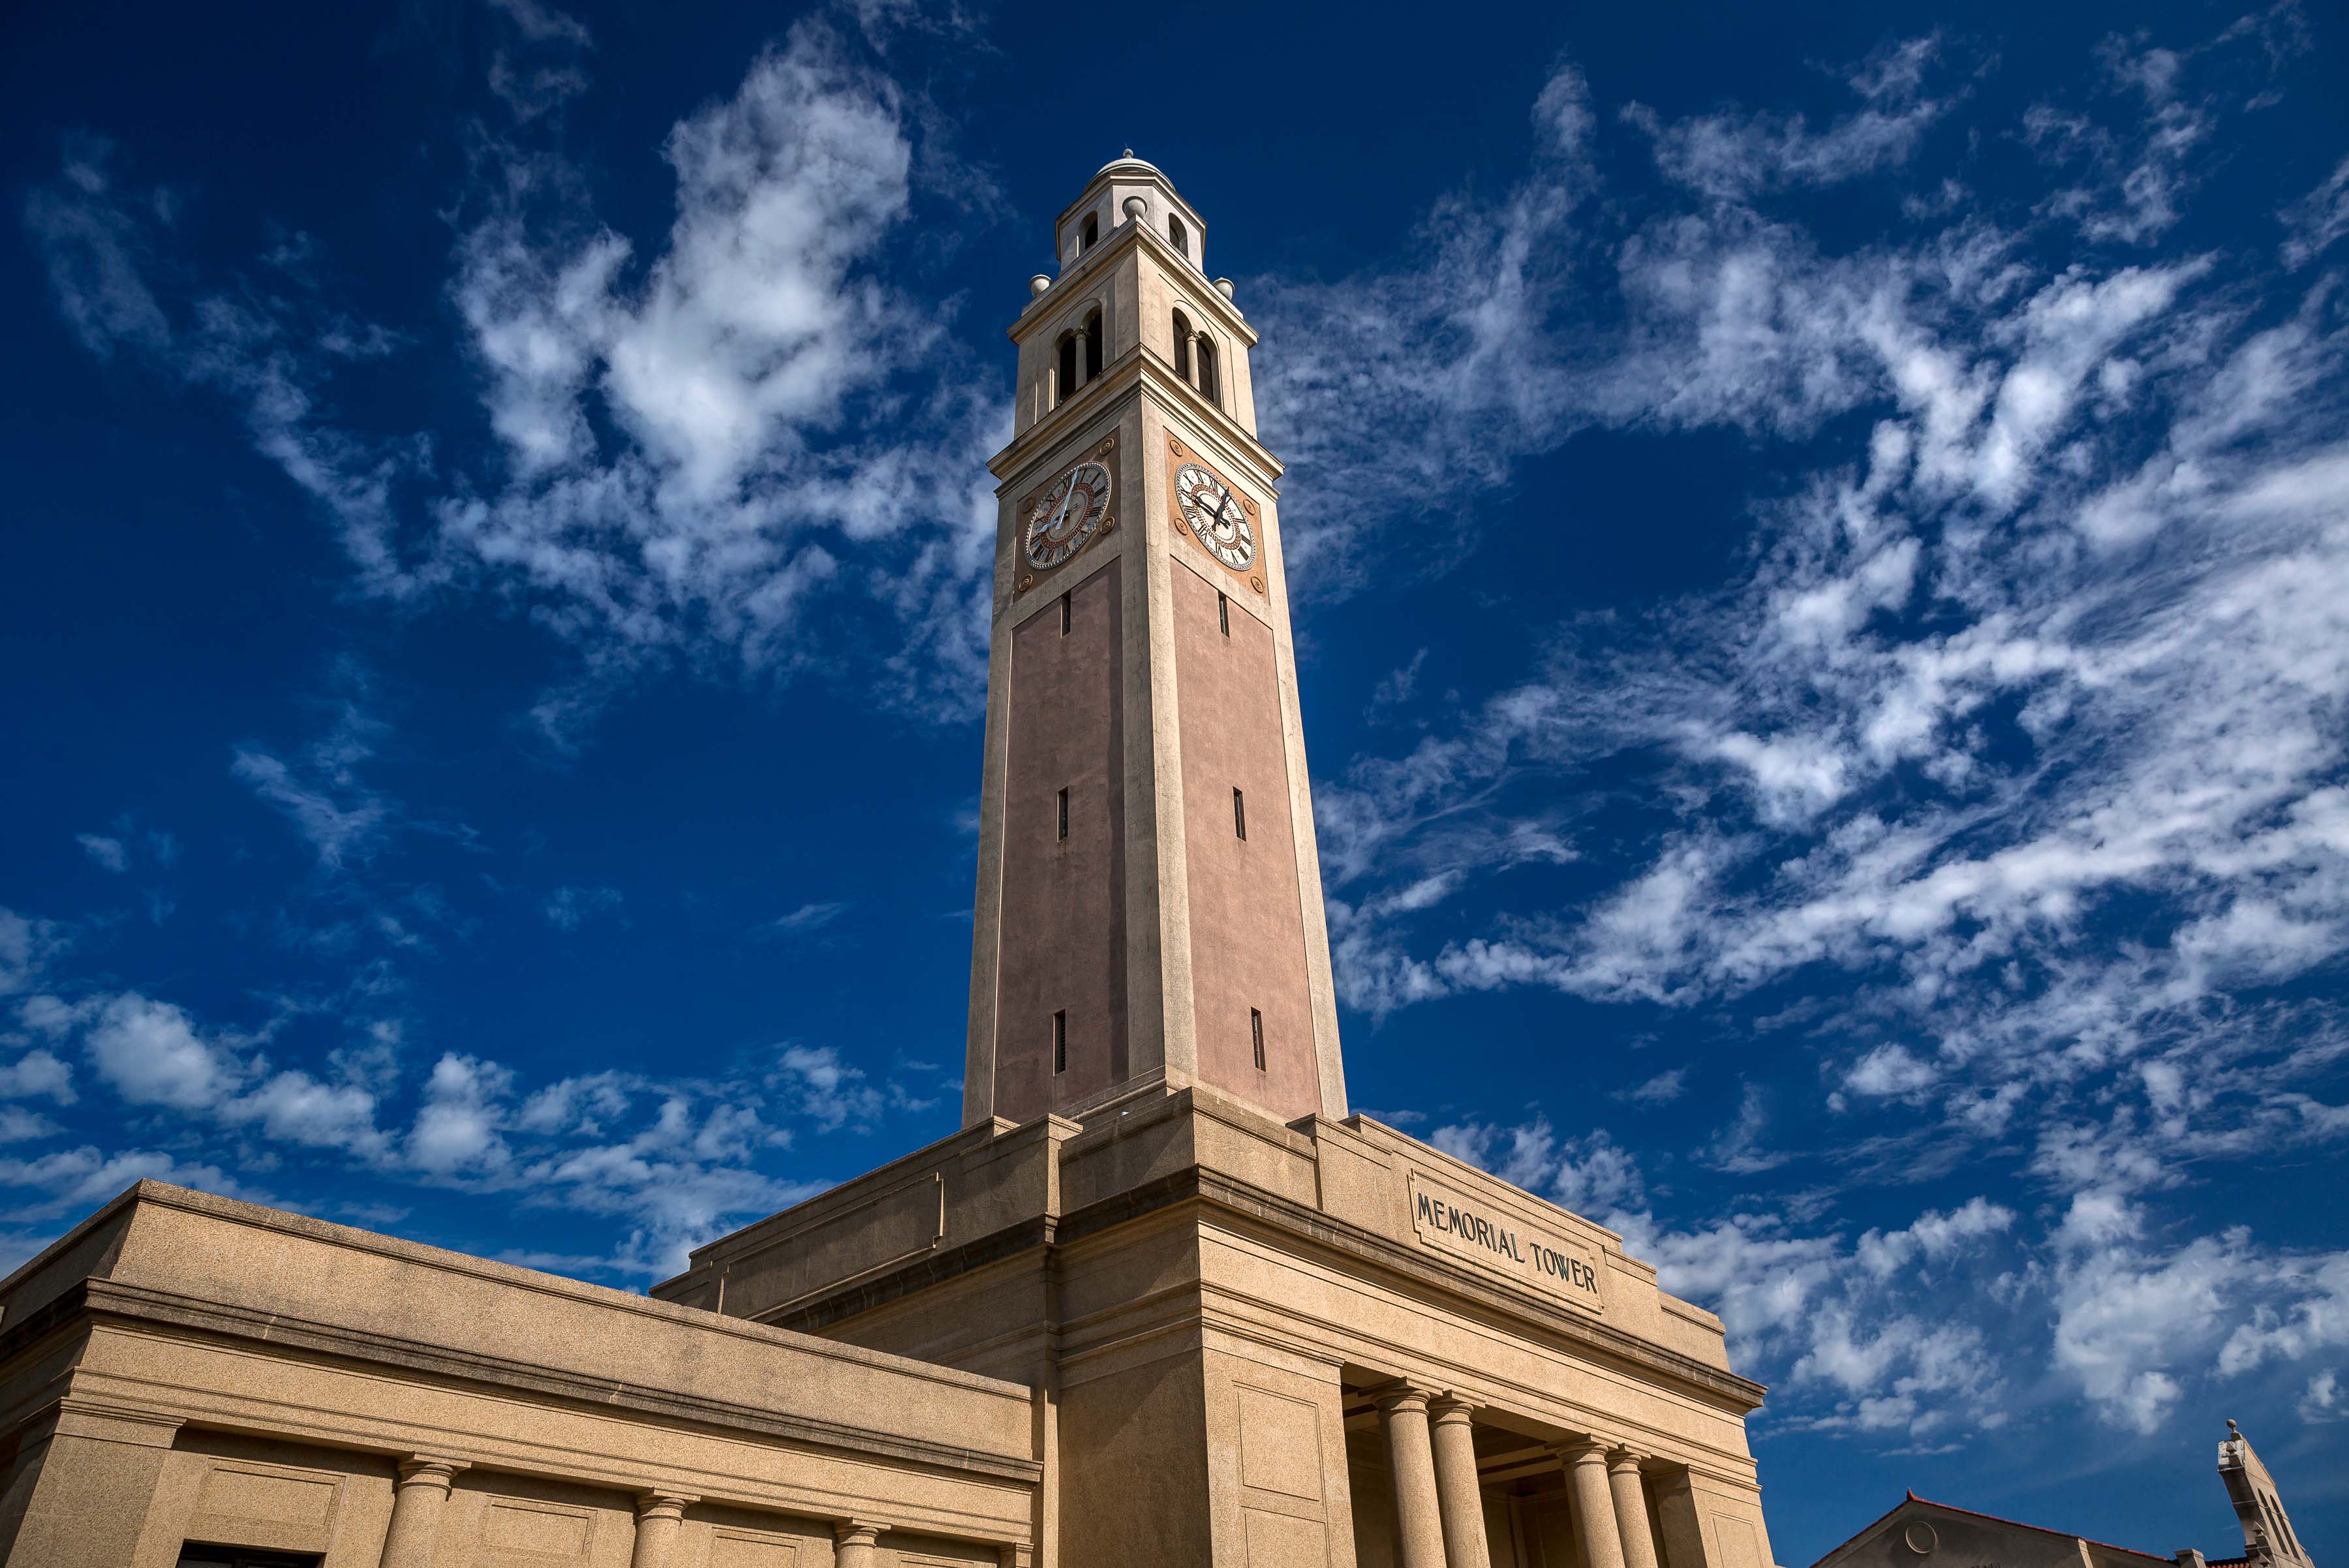 memorial tower in blue sky